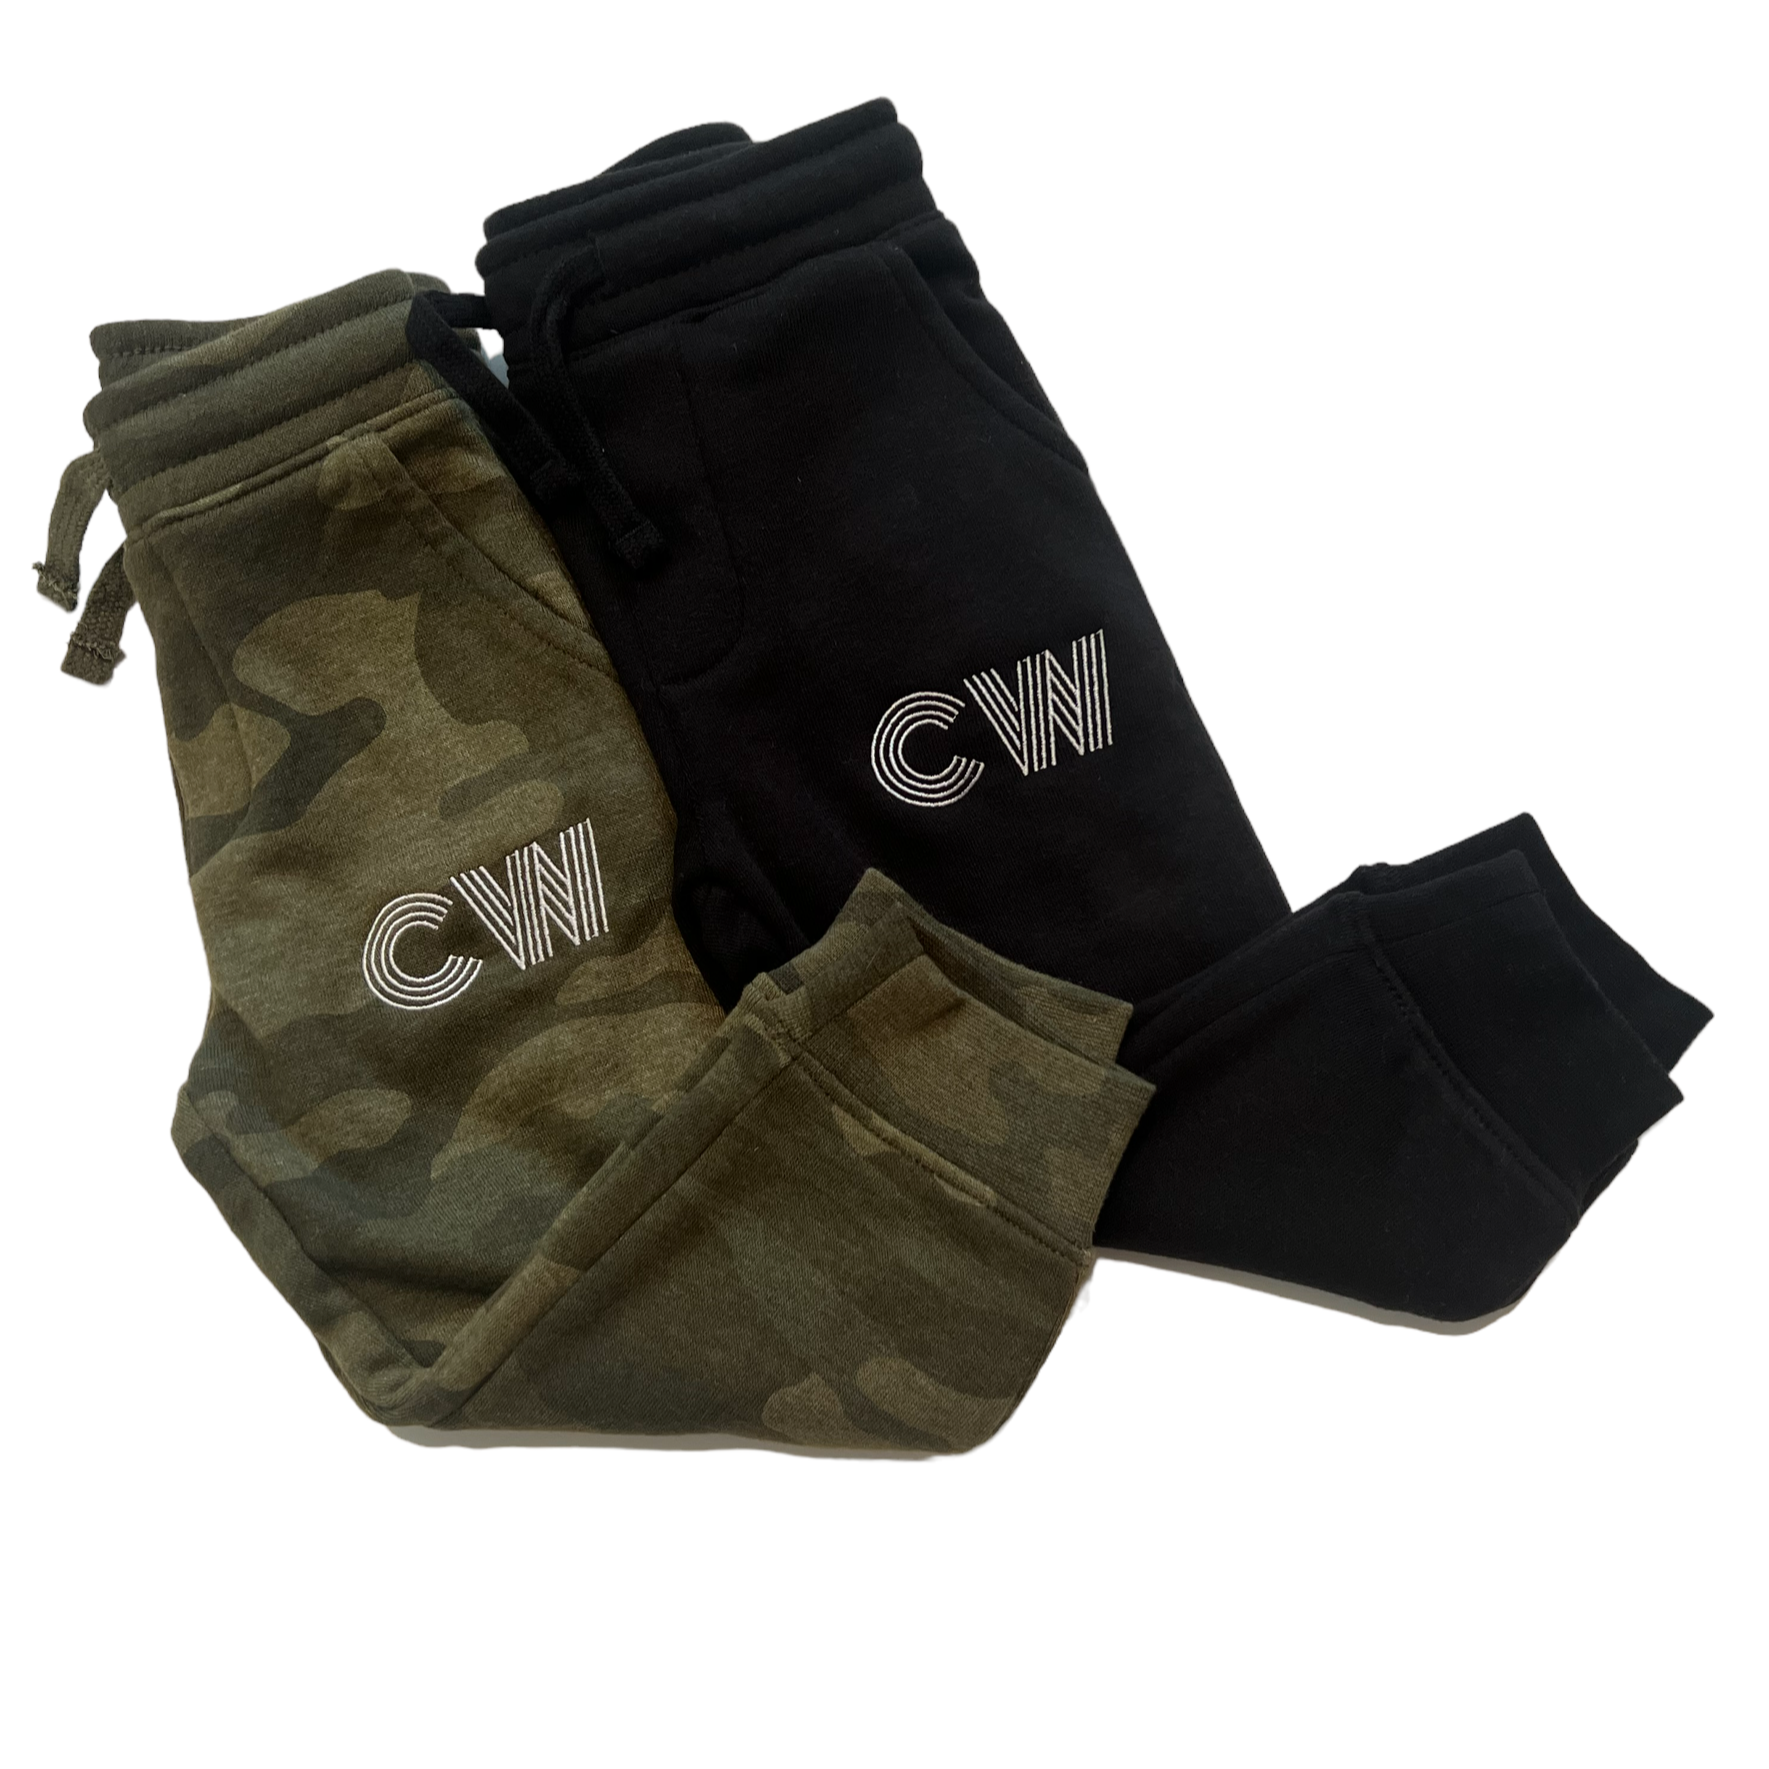 "CW" Sweatpants